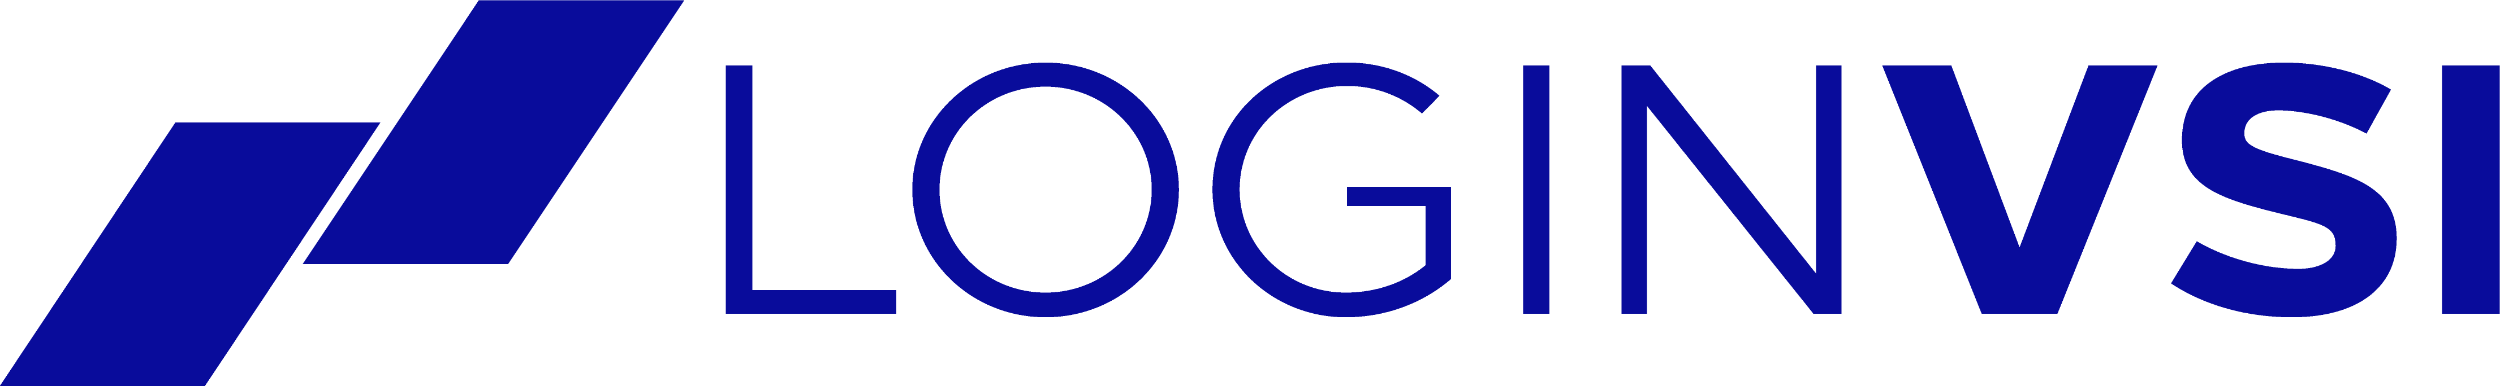 logo loginvsi 1200